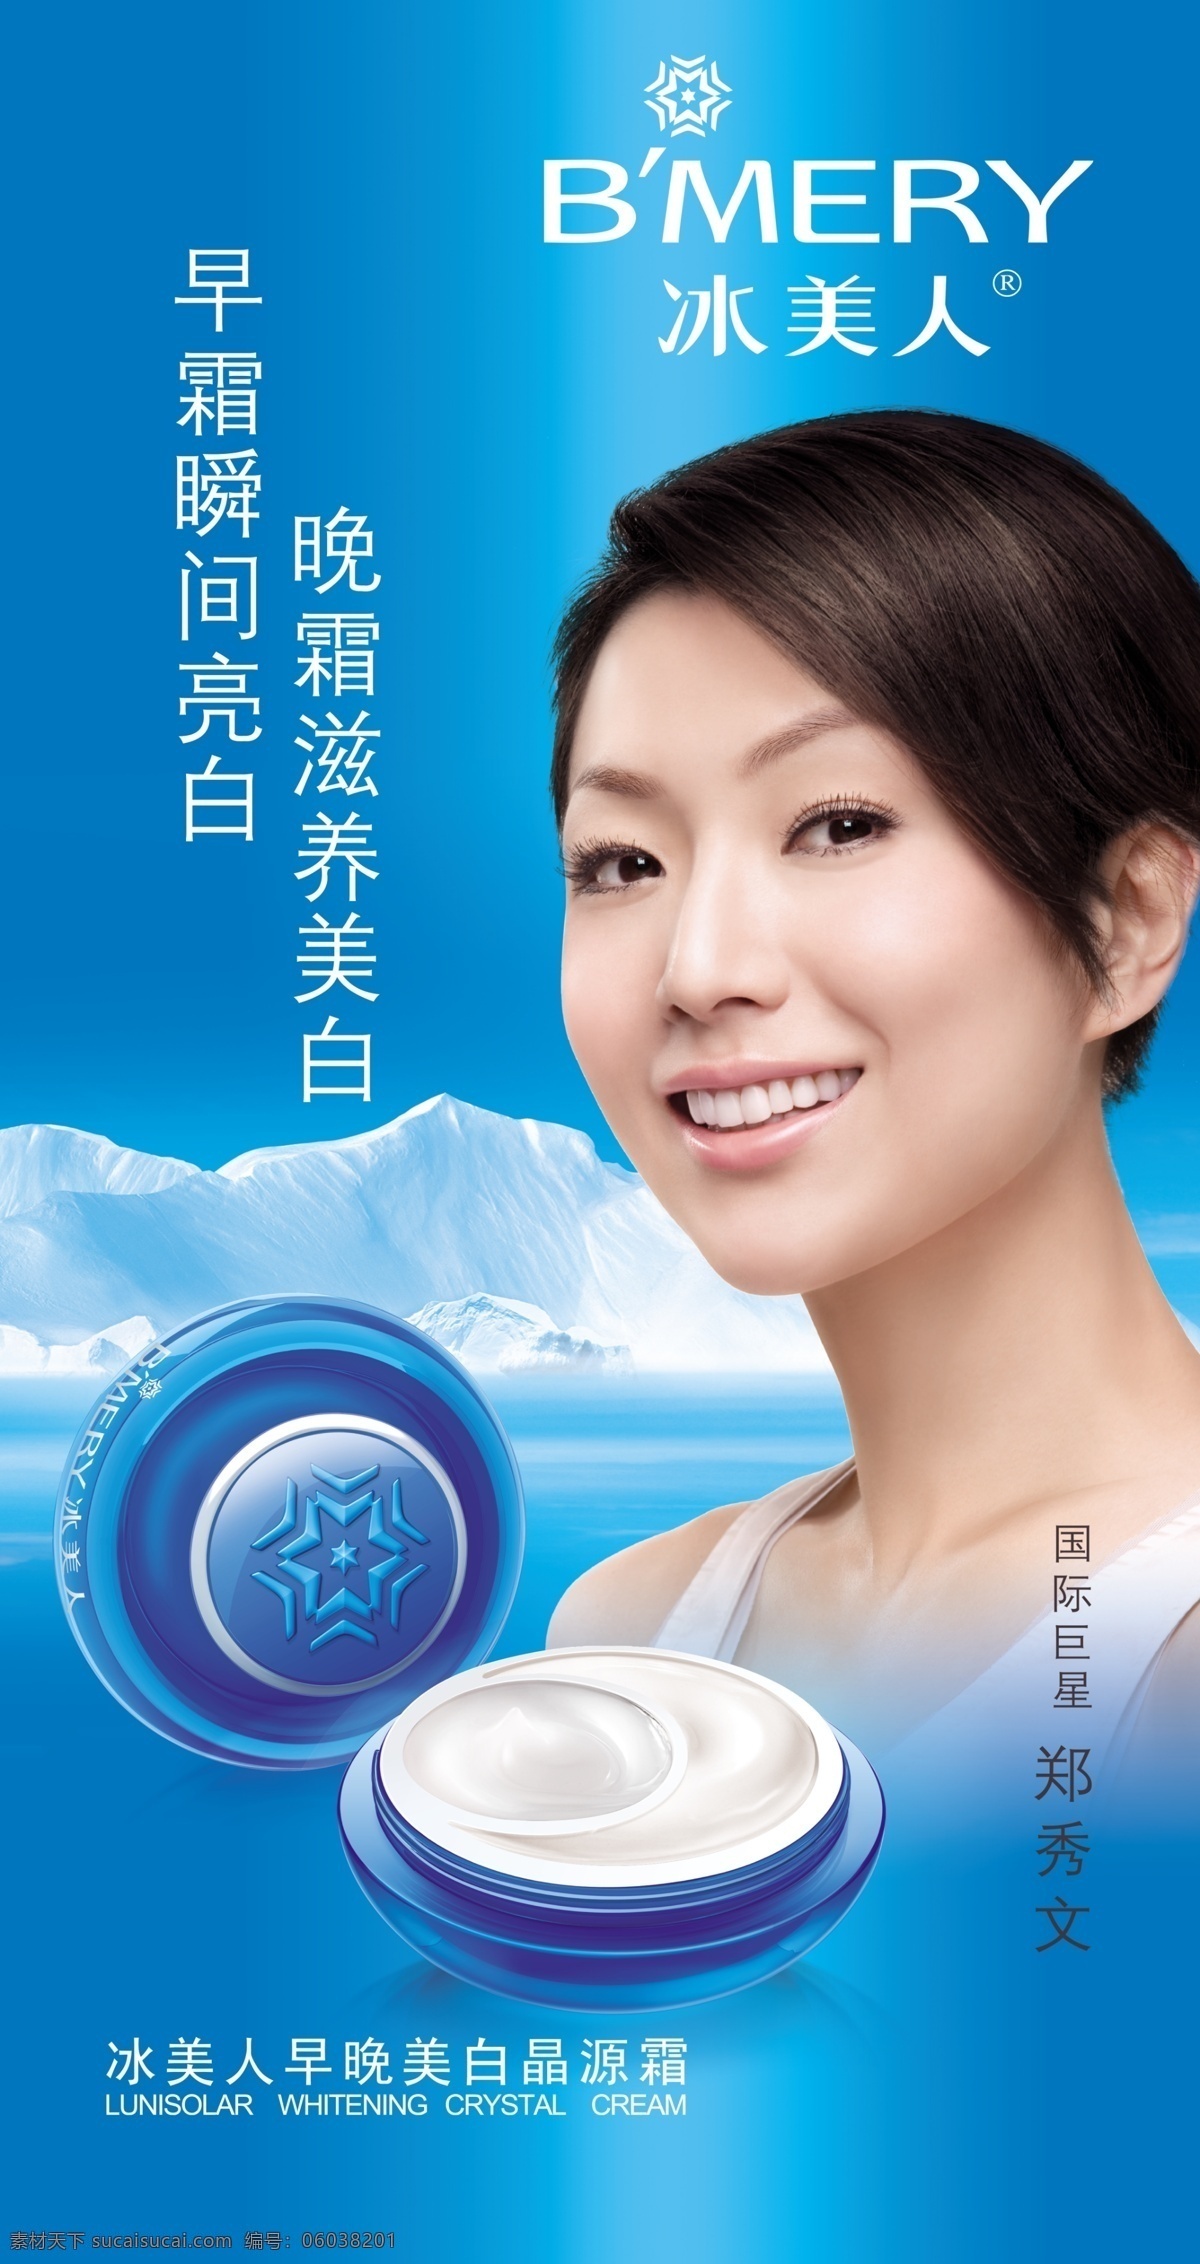 冰美人 日化宣传 冰 美人 日 化妆品 蓝色背景 雪山 冰美人标志 展板 展板模板 源文件 广告设计模板